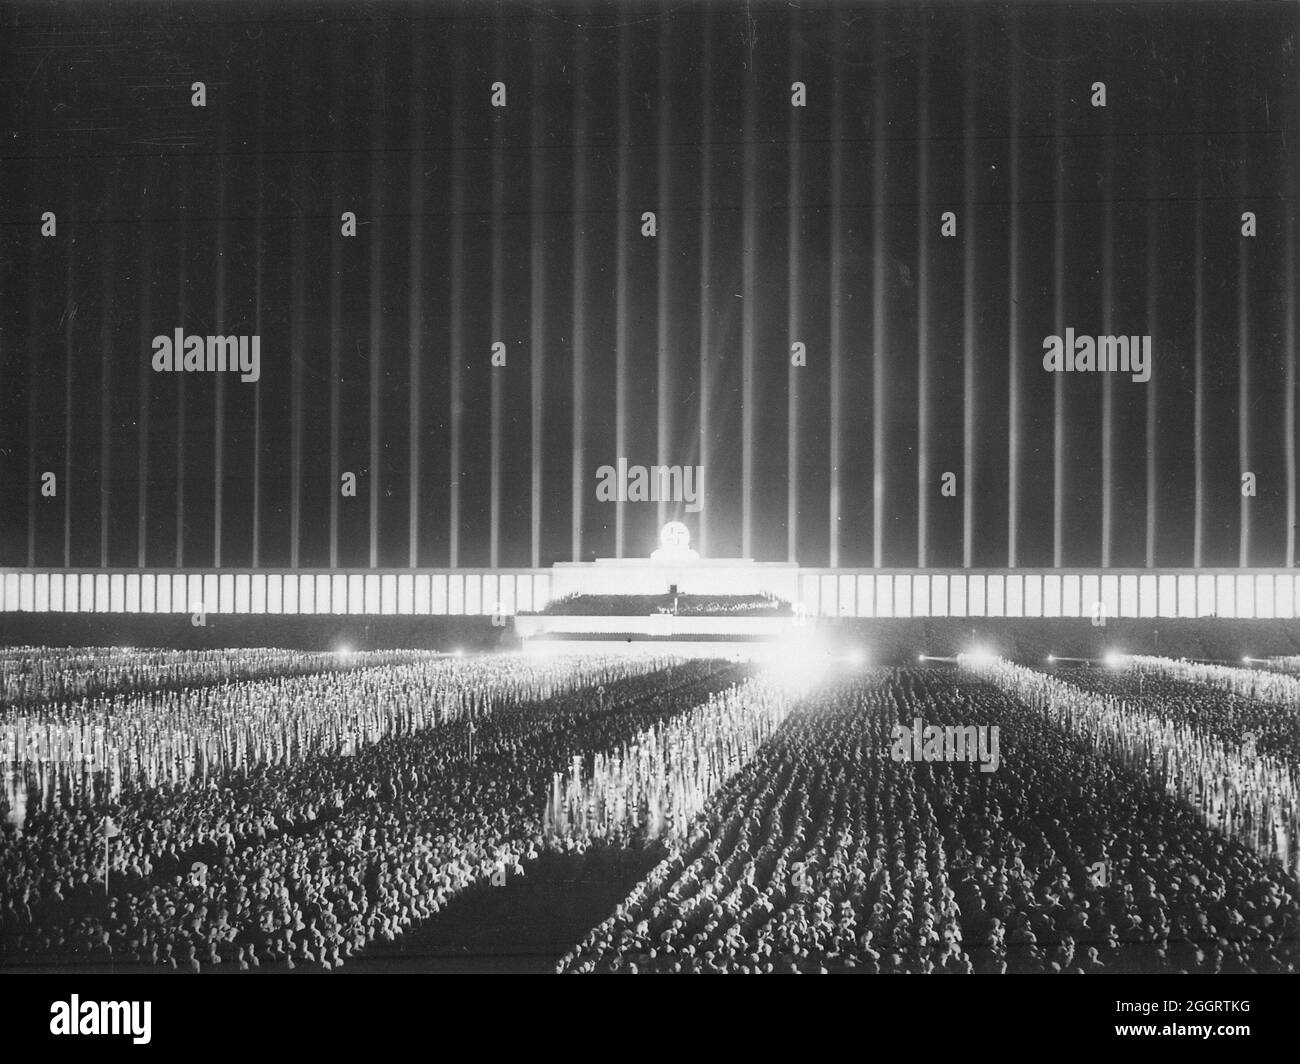 Una foto del Rally di Norimberga che mostra migliaia di persone e la famosa Cattedrale della luce di Albert Speer Foto Stock